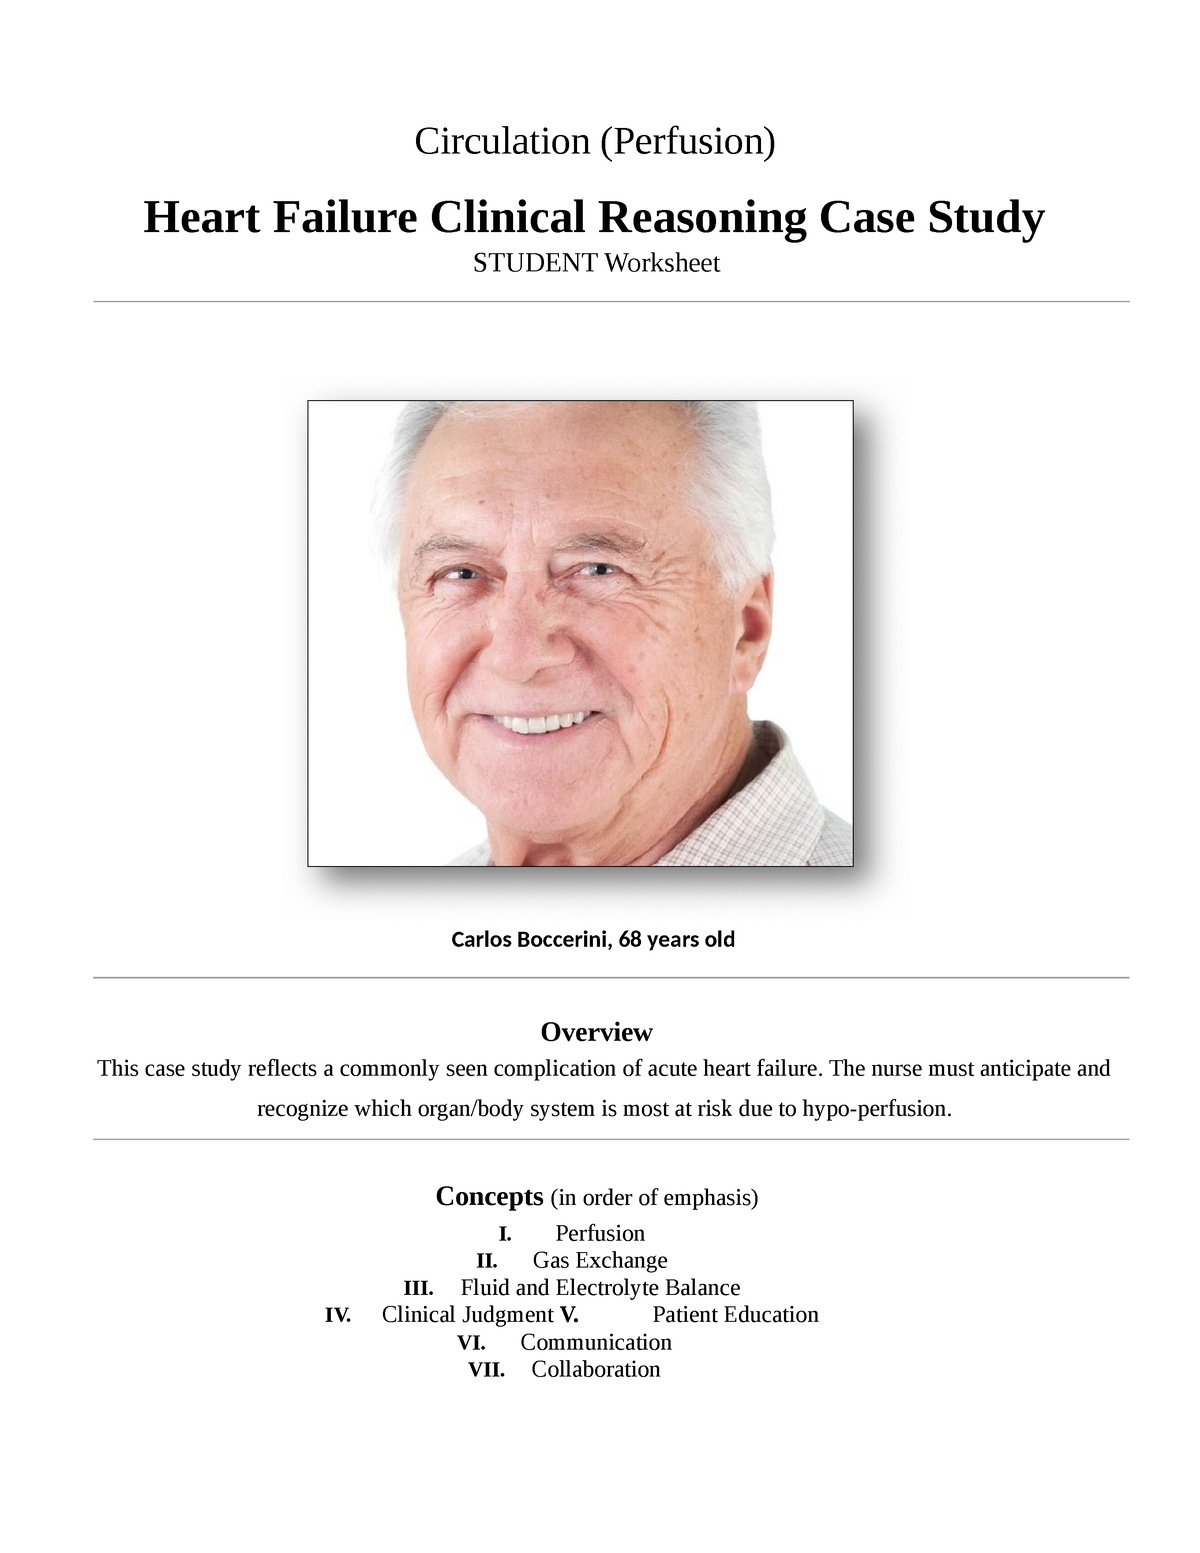 a case study heart failure